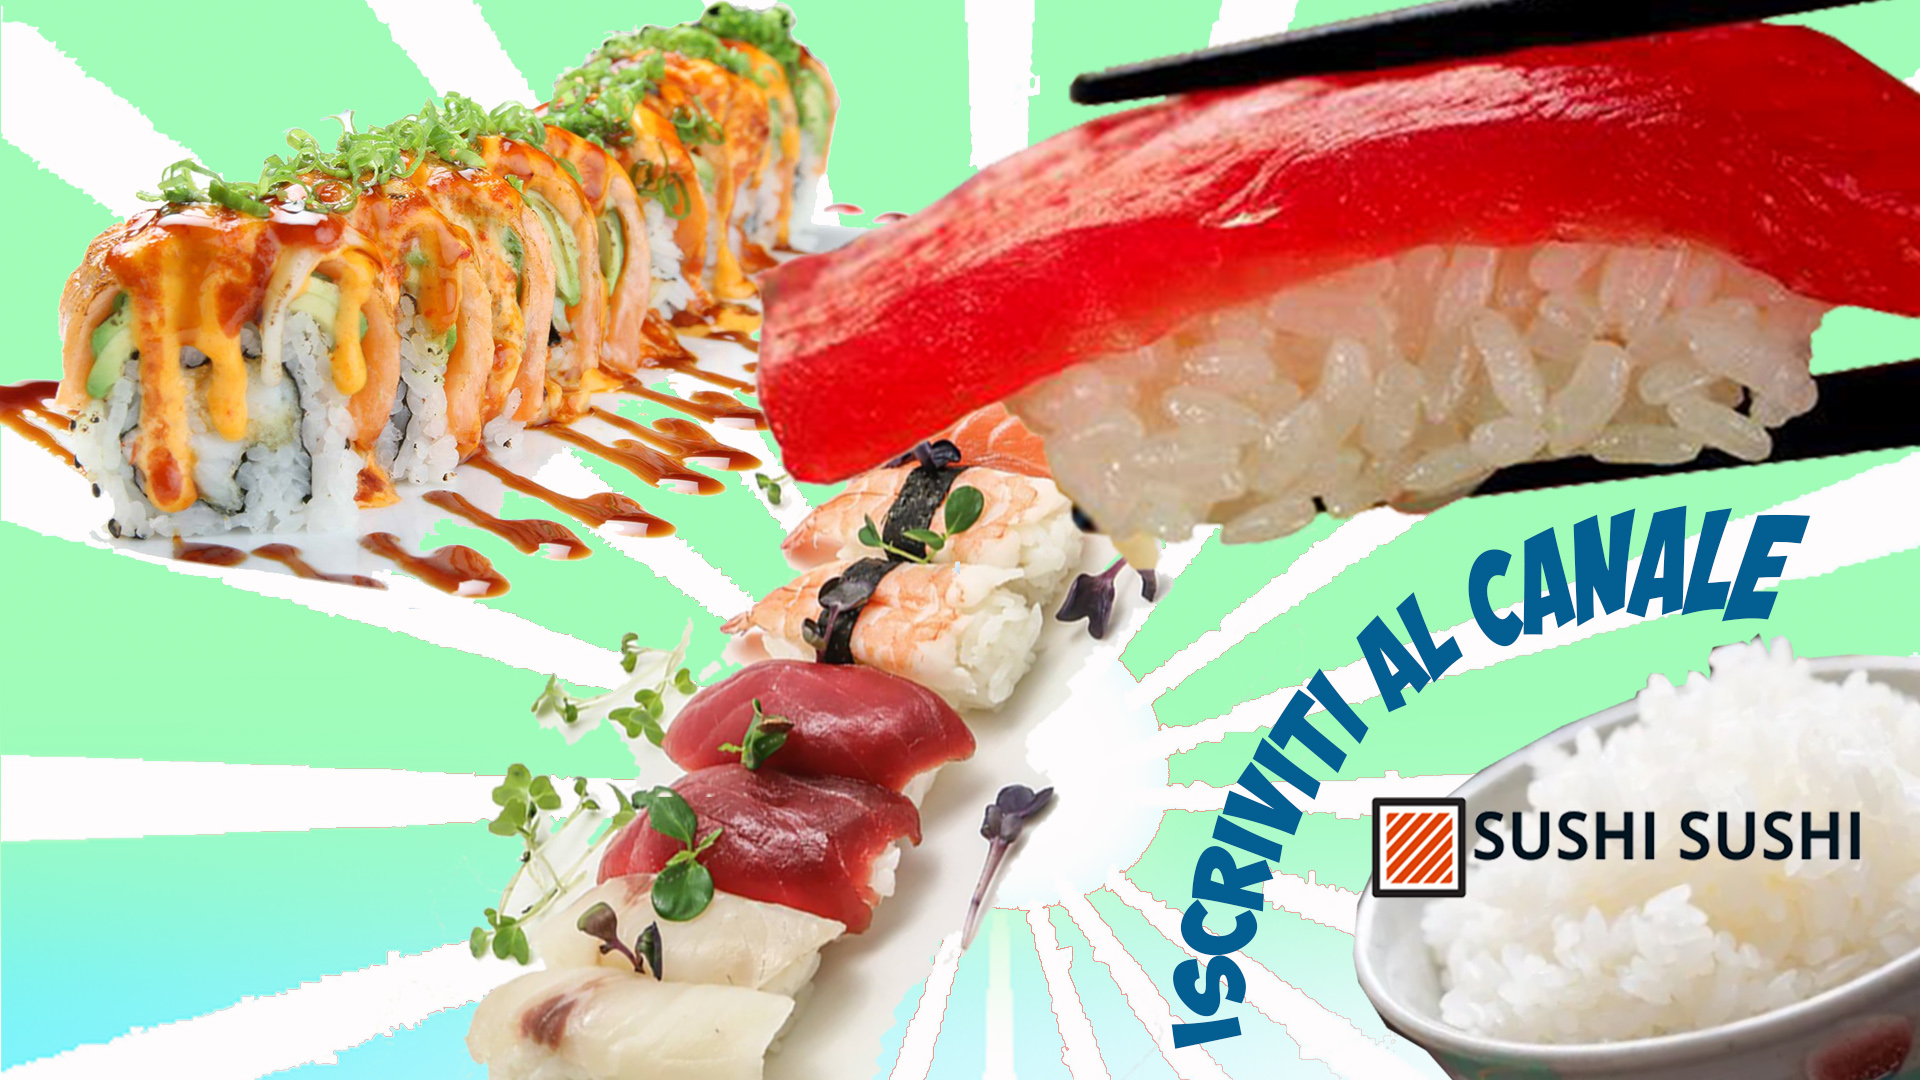 Sushi sushi video recipes